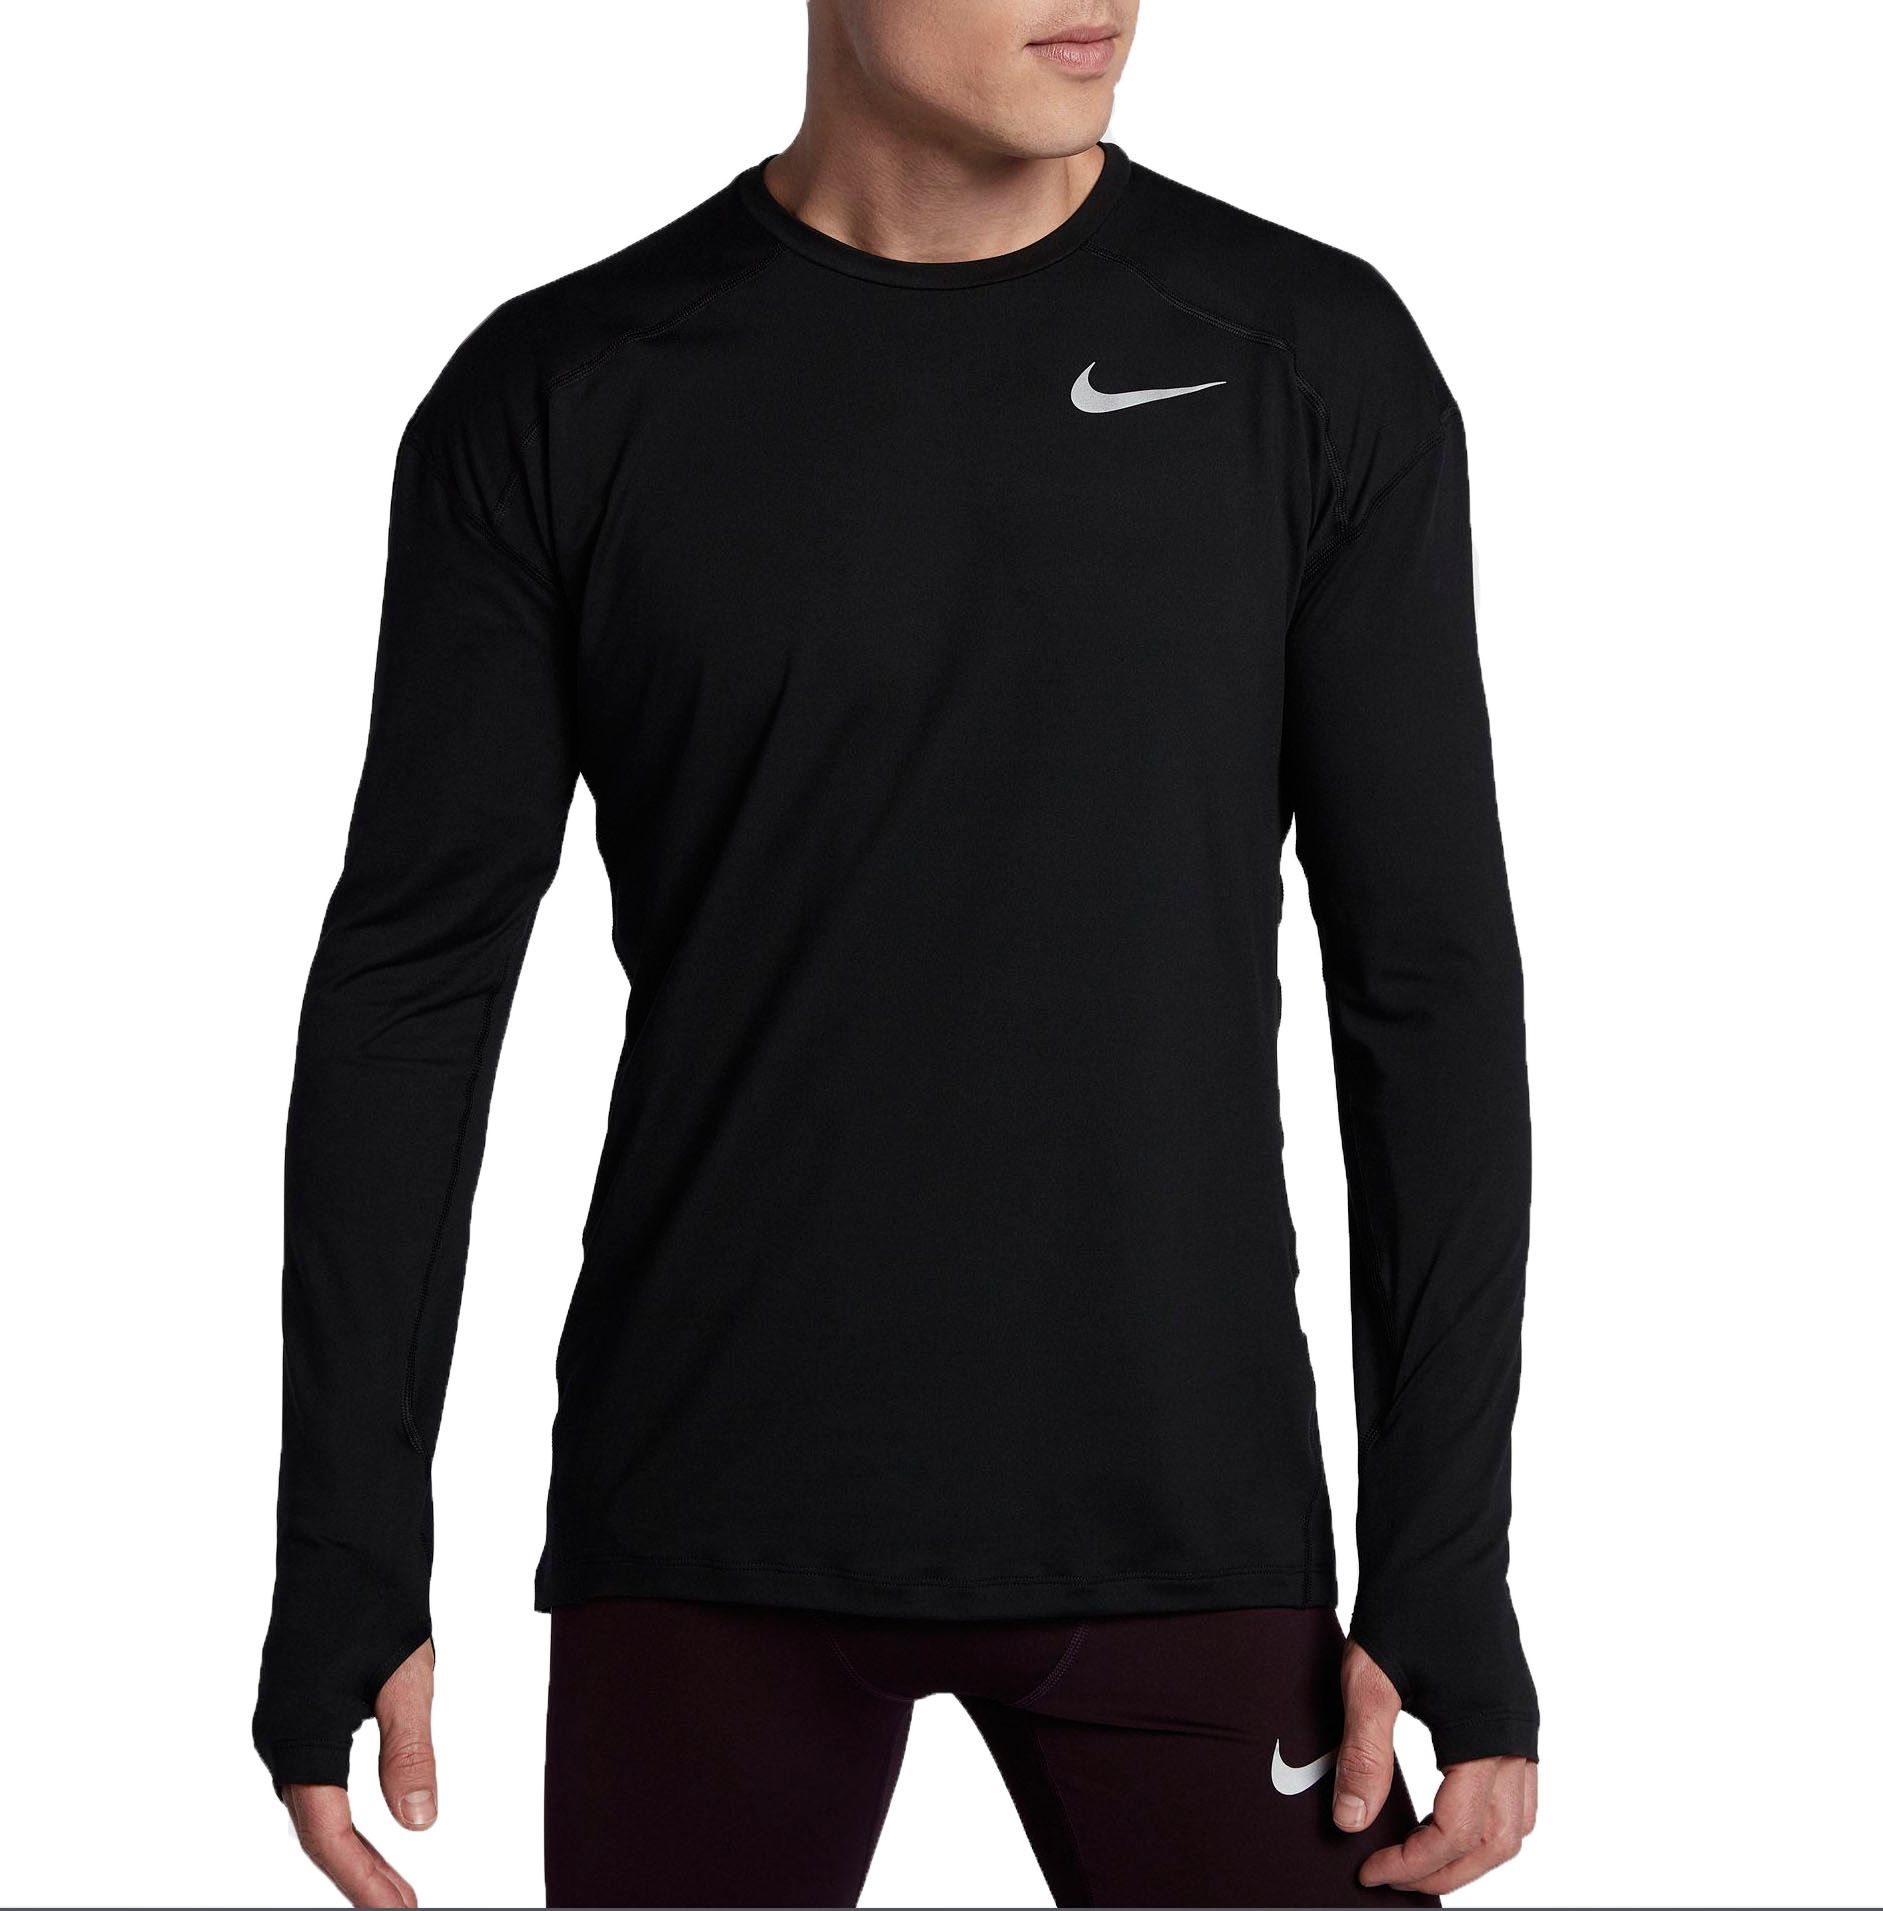 Nike Men's Dry Element Long Sleeve Running Shirt - .97